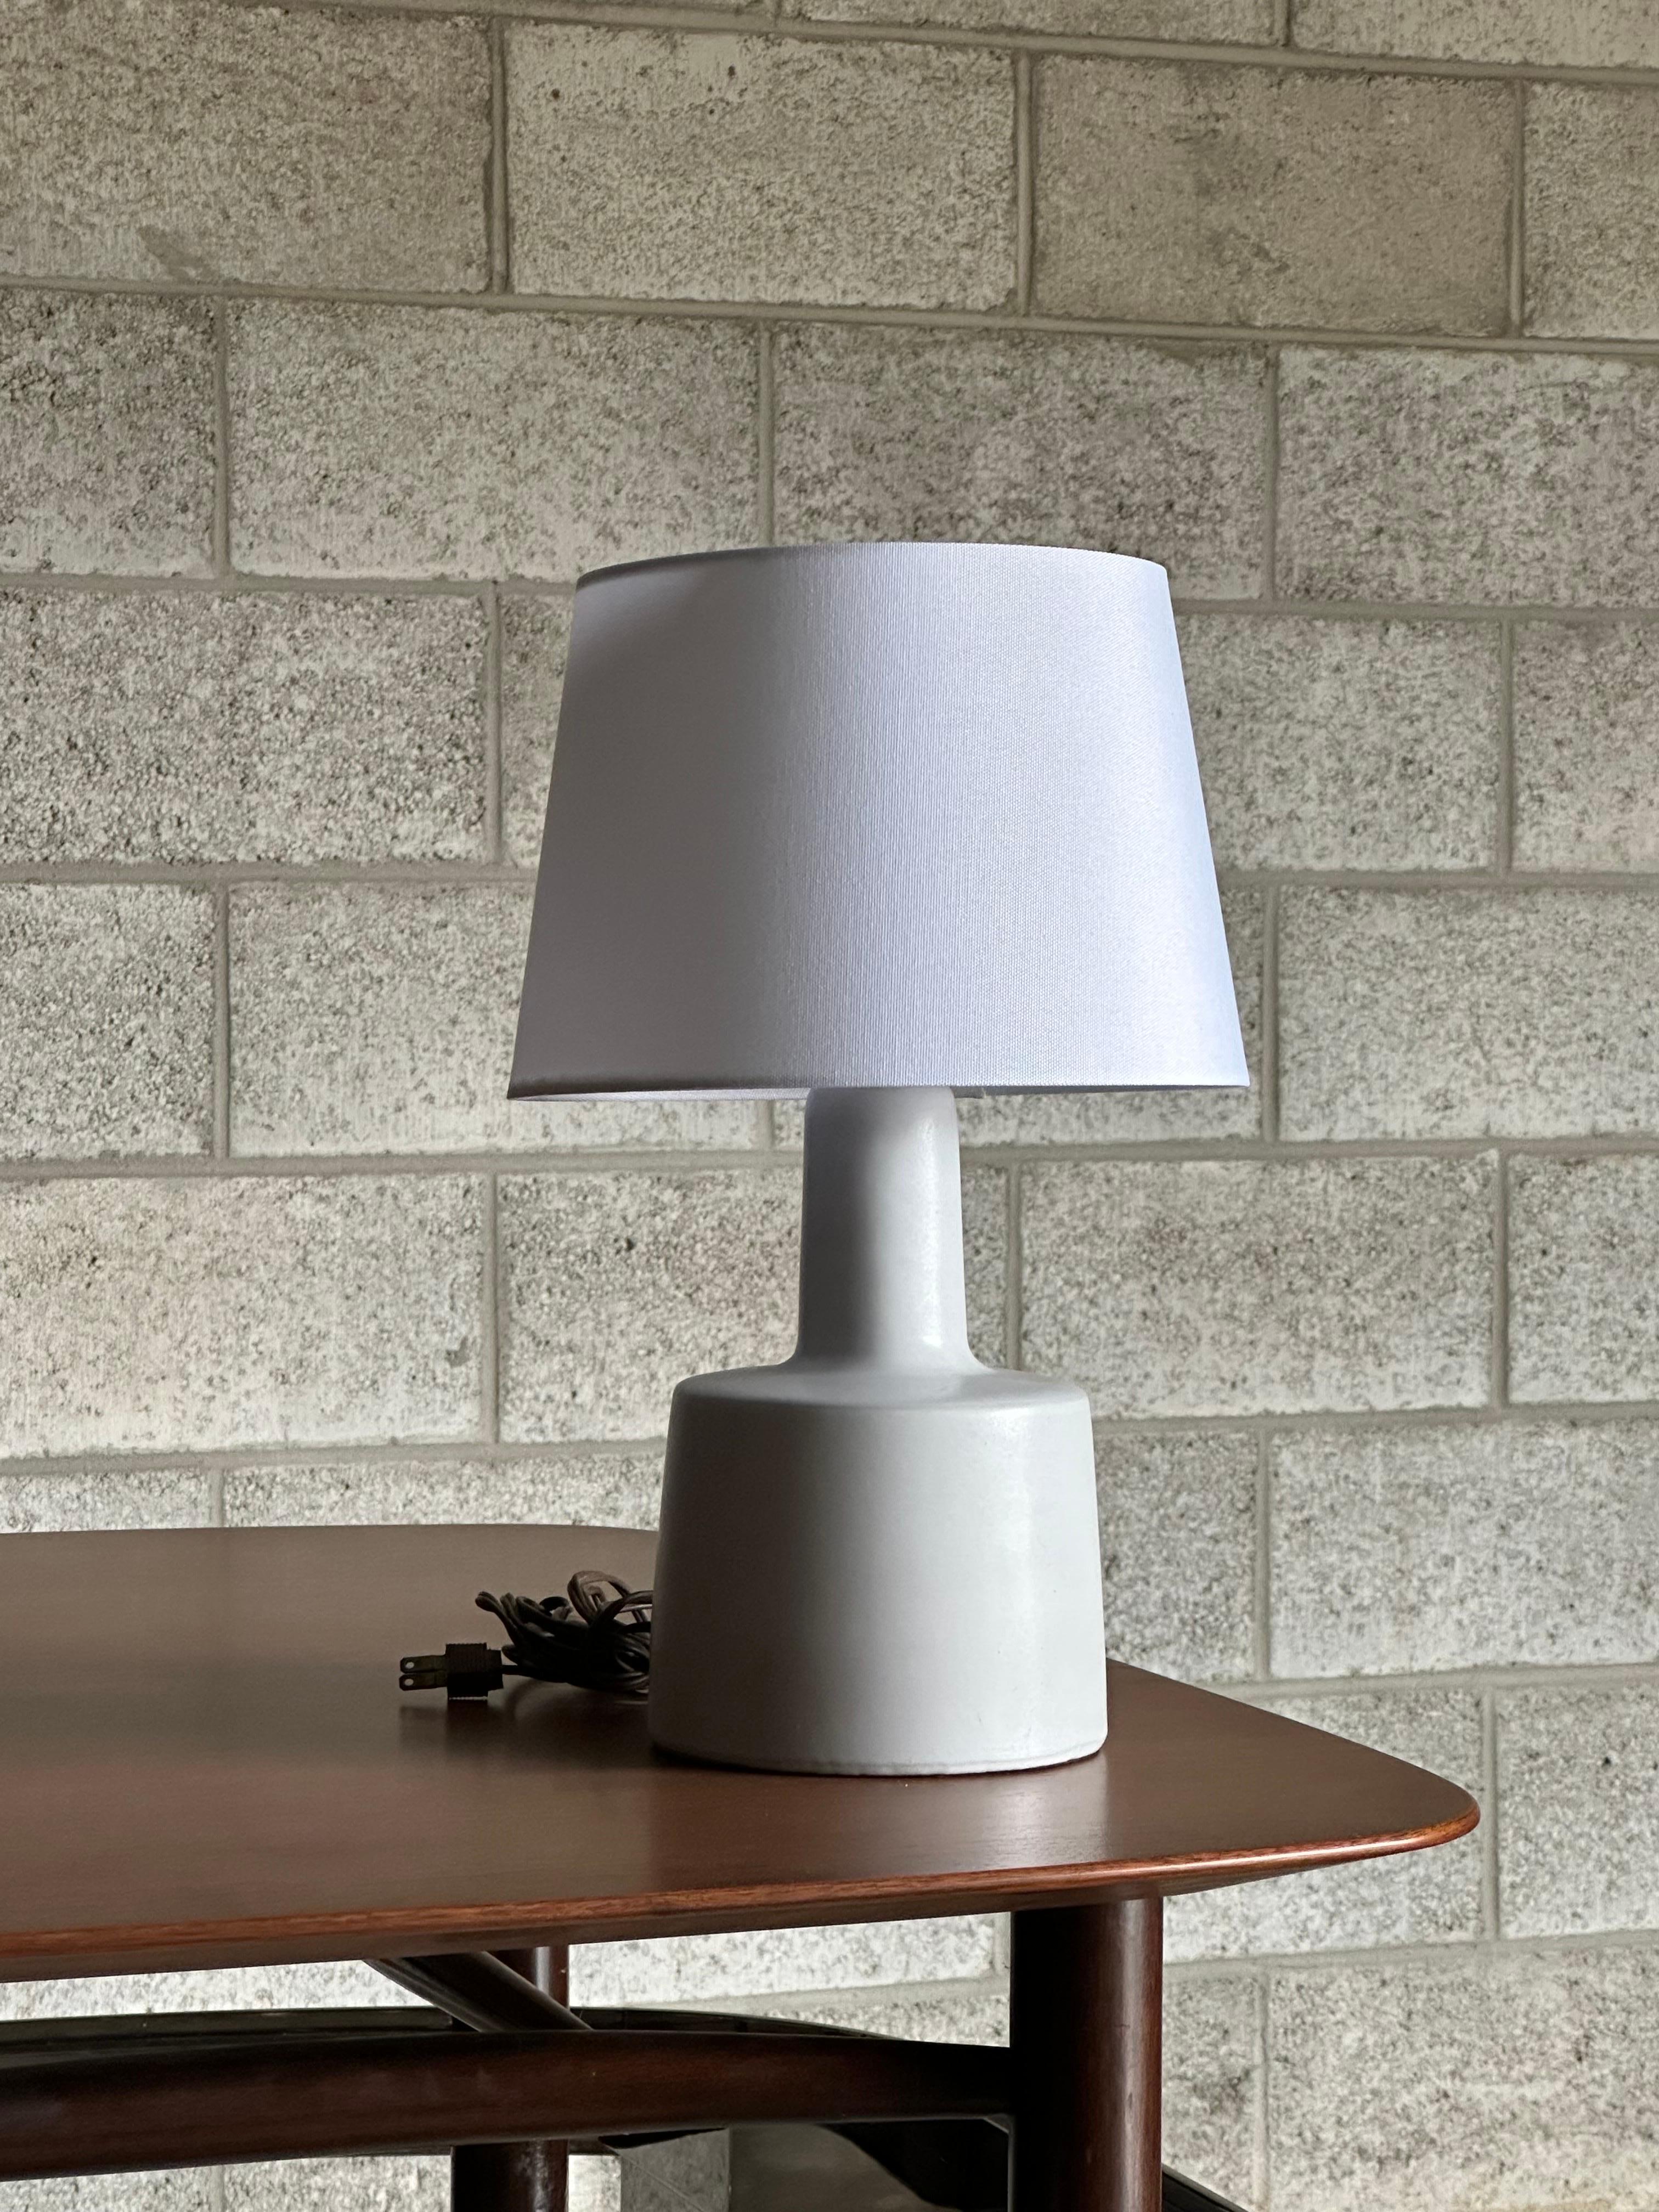 Lampe de table conçue par le duo de céramistes Jane et Gordon Martz pour Marshall Studios. La couleur est blanc cassé avec une glaçure plate. 

Dimensions générales : 
16